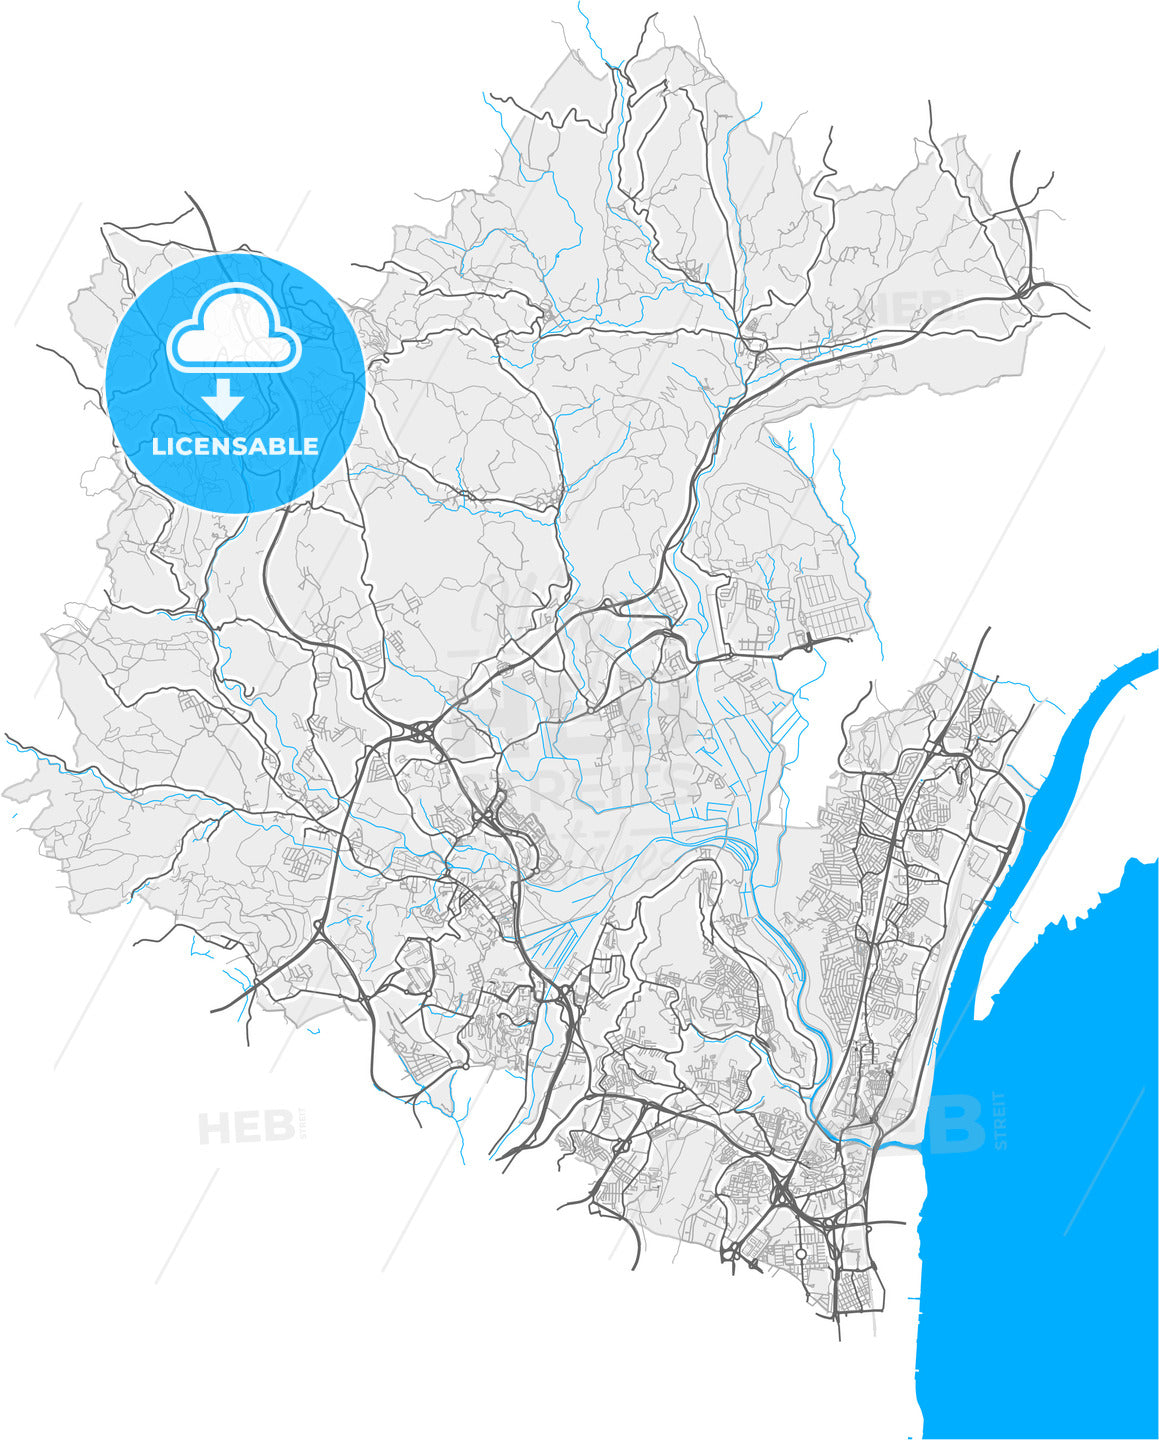 Loures, Lisbon, Portugal, high quality vector map